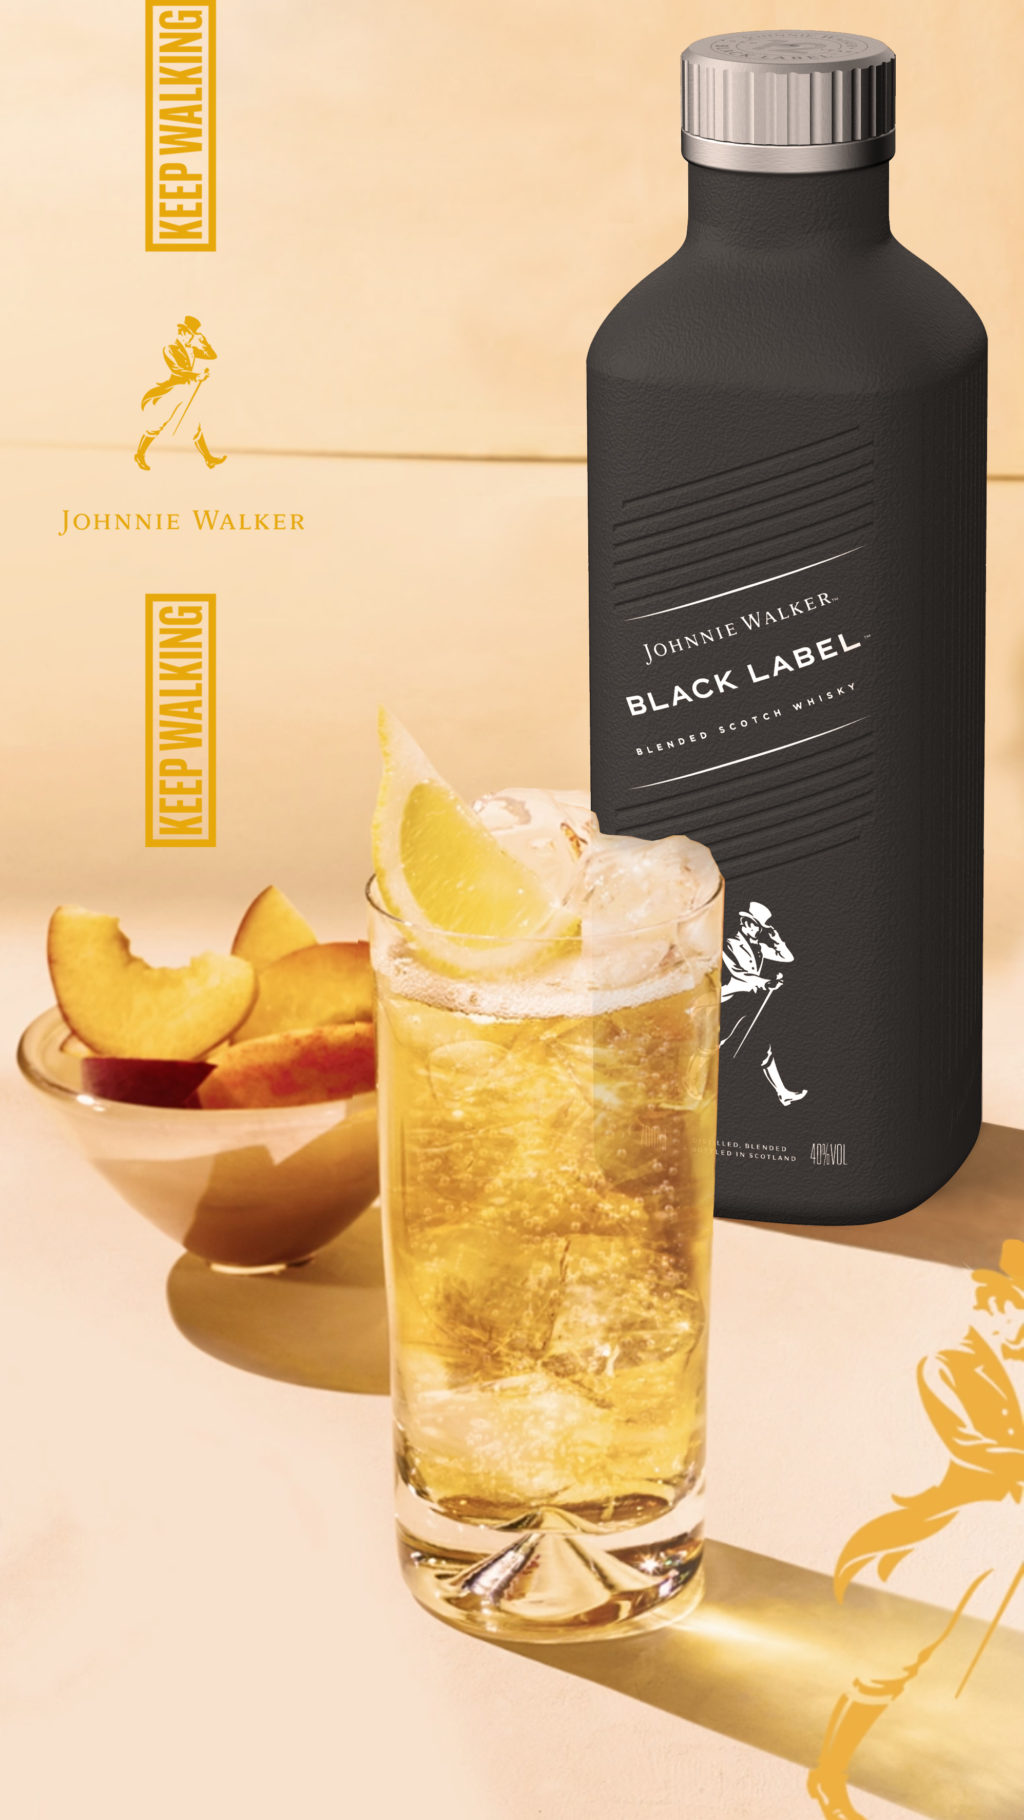 Embalagem de Johnnie Walker Black Label ao lado de um copo com o famoso drink Highball.